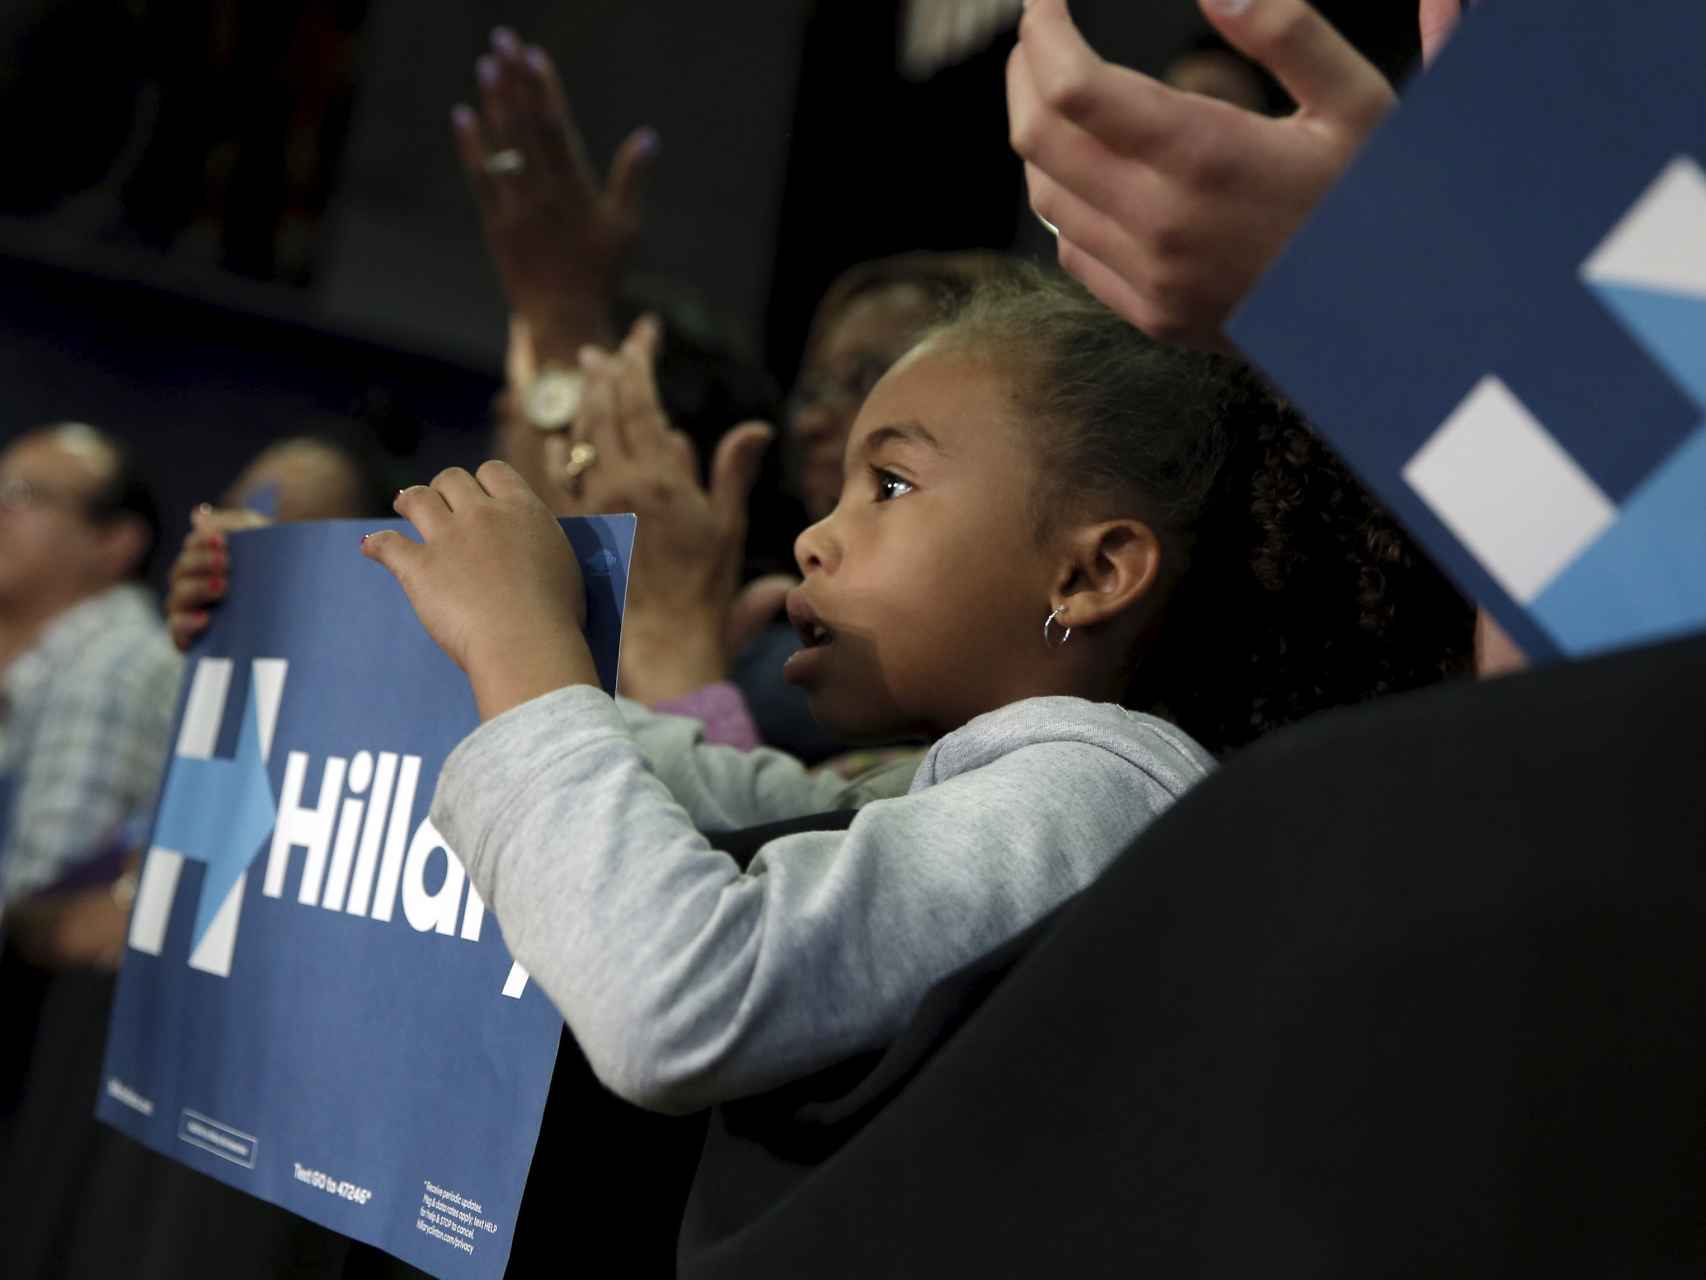 Una niña durante el mitin de Hillary Clinton en Bridgeport.